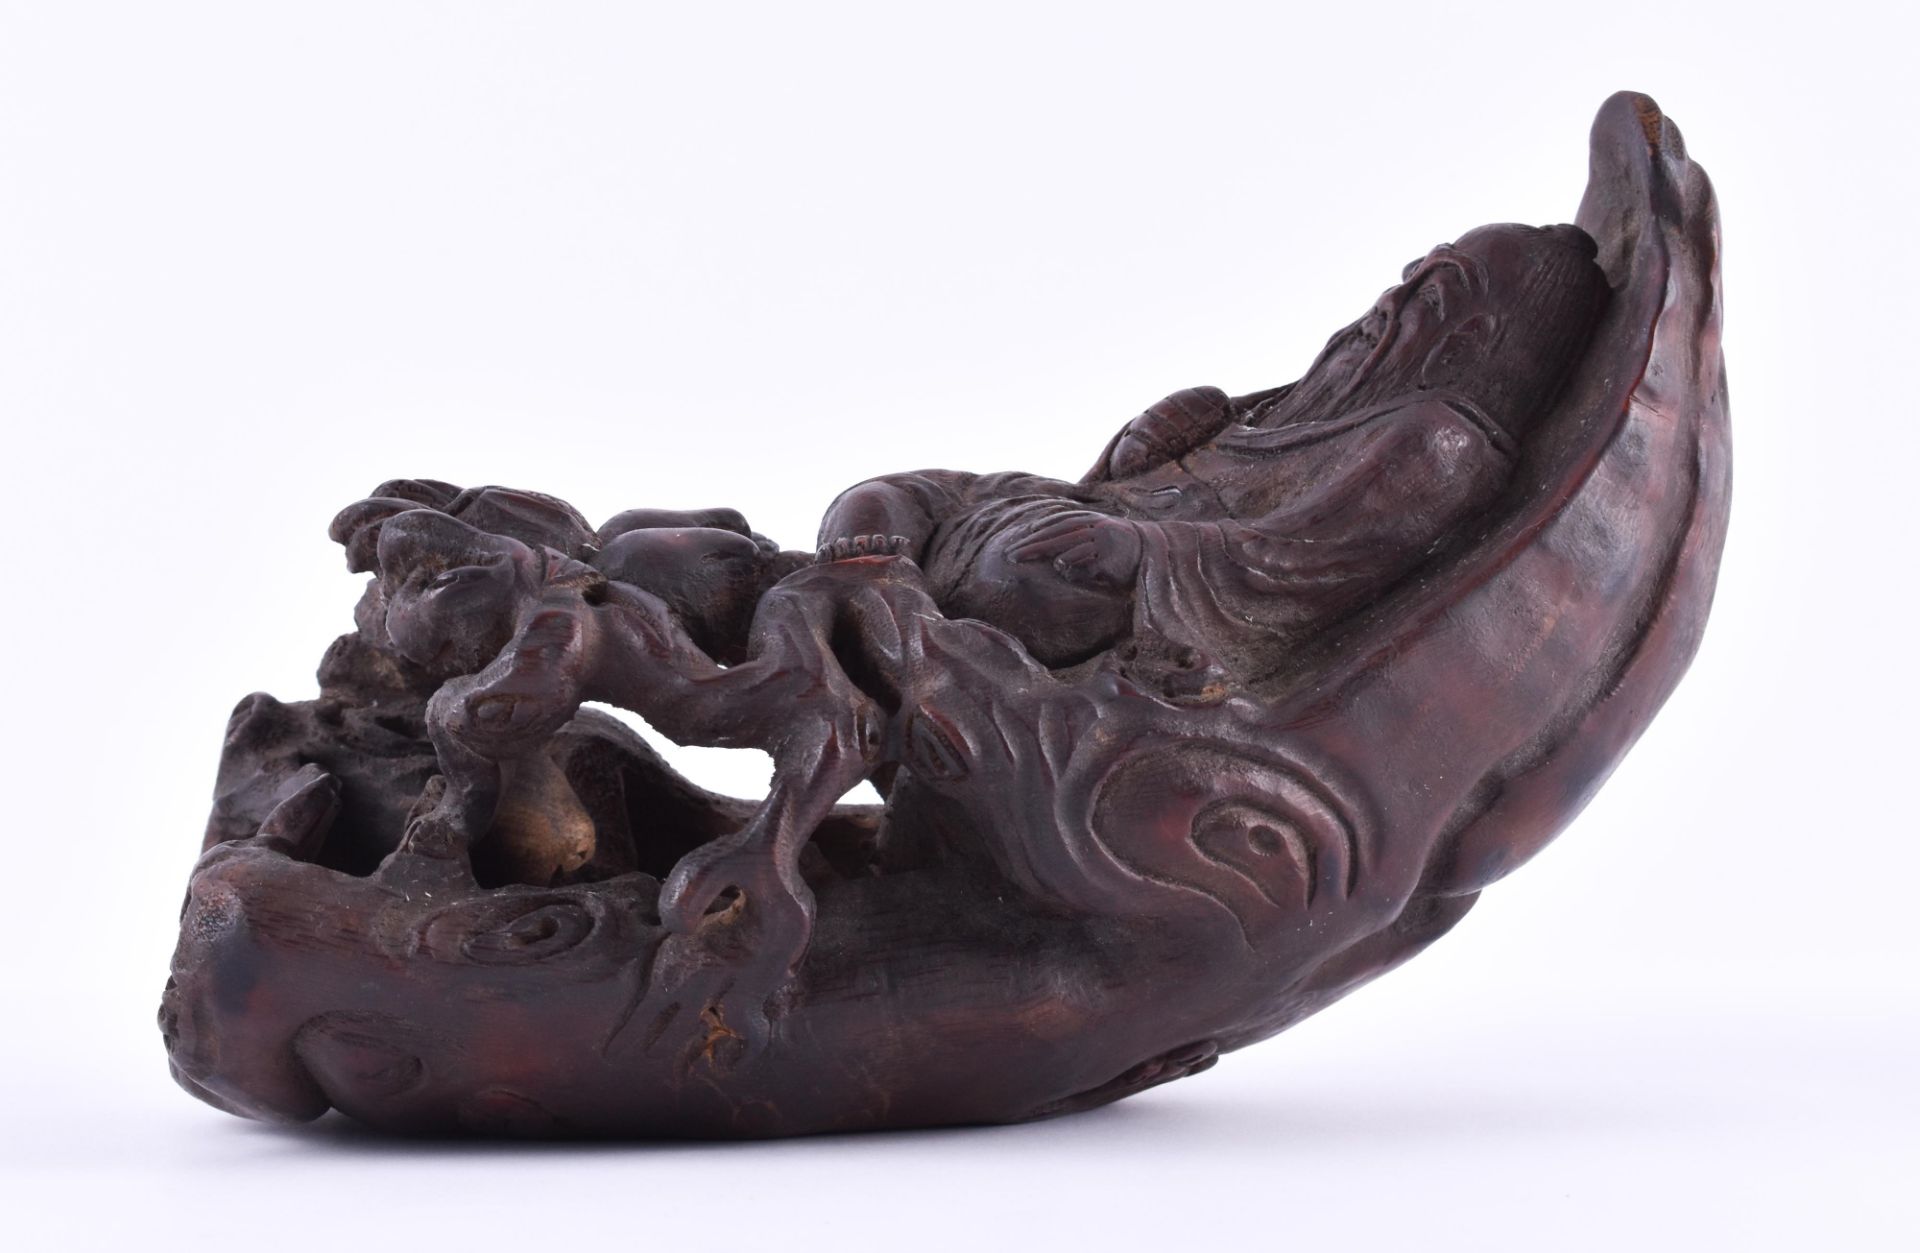 Taoistischer Weiser China Qingperiode 19. Jhd.Holz, geschnitzt, Gelehrter mit Pfirsichen und